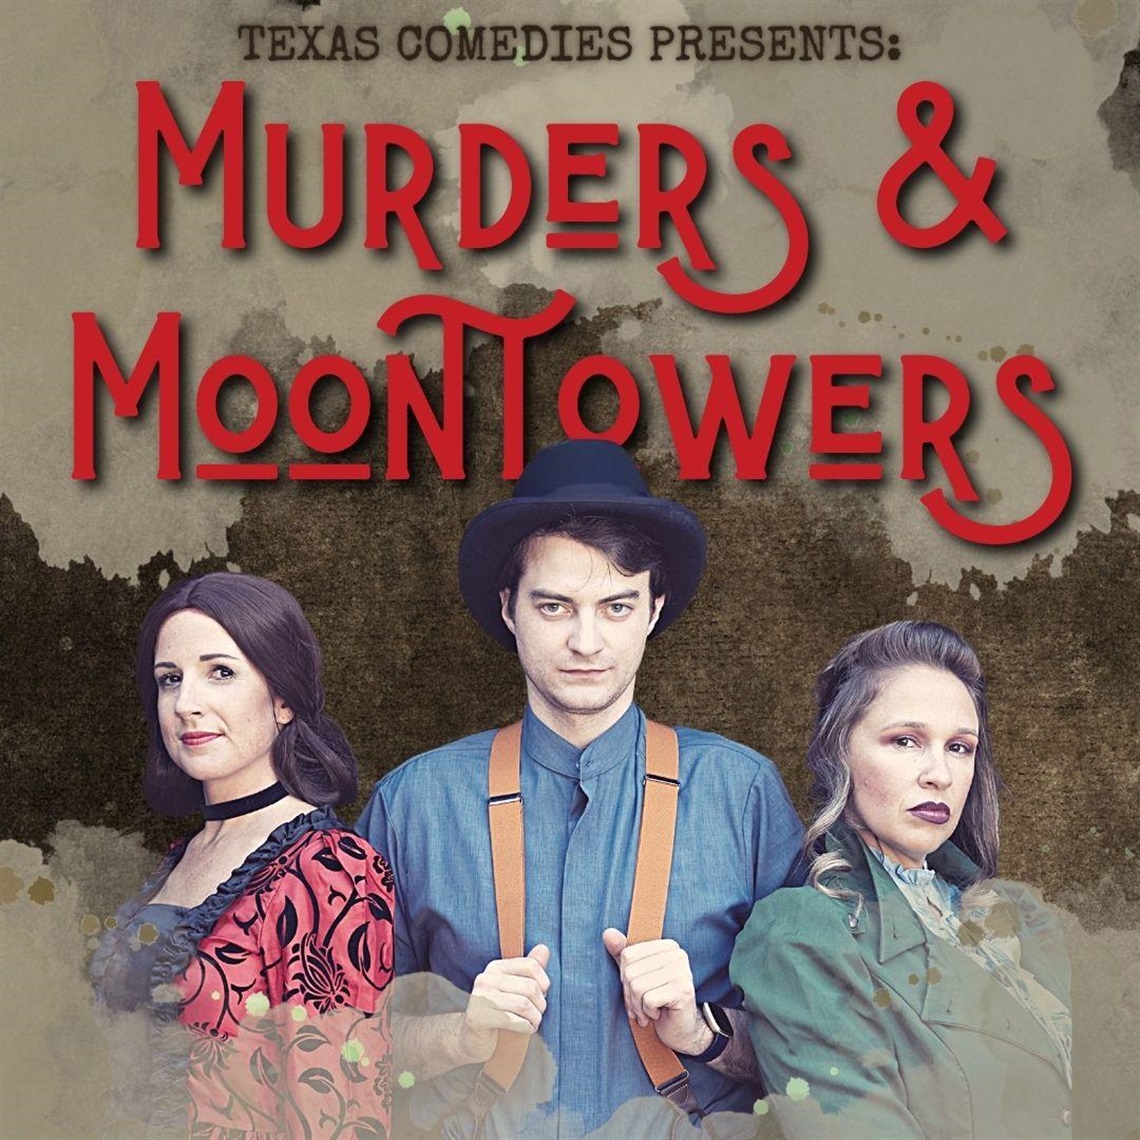 Murders & Moontowners